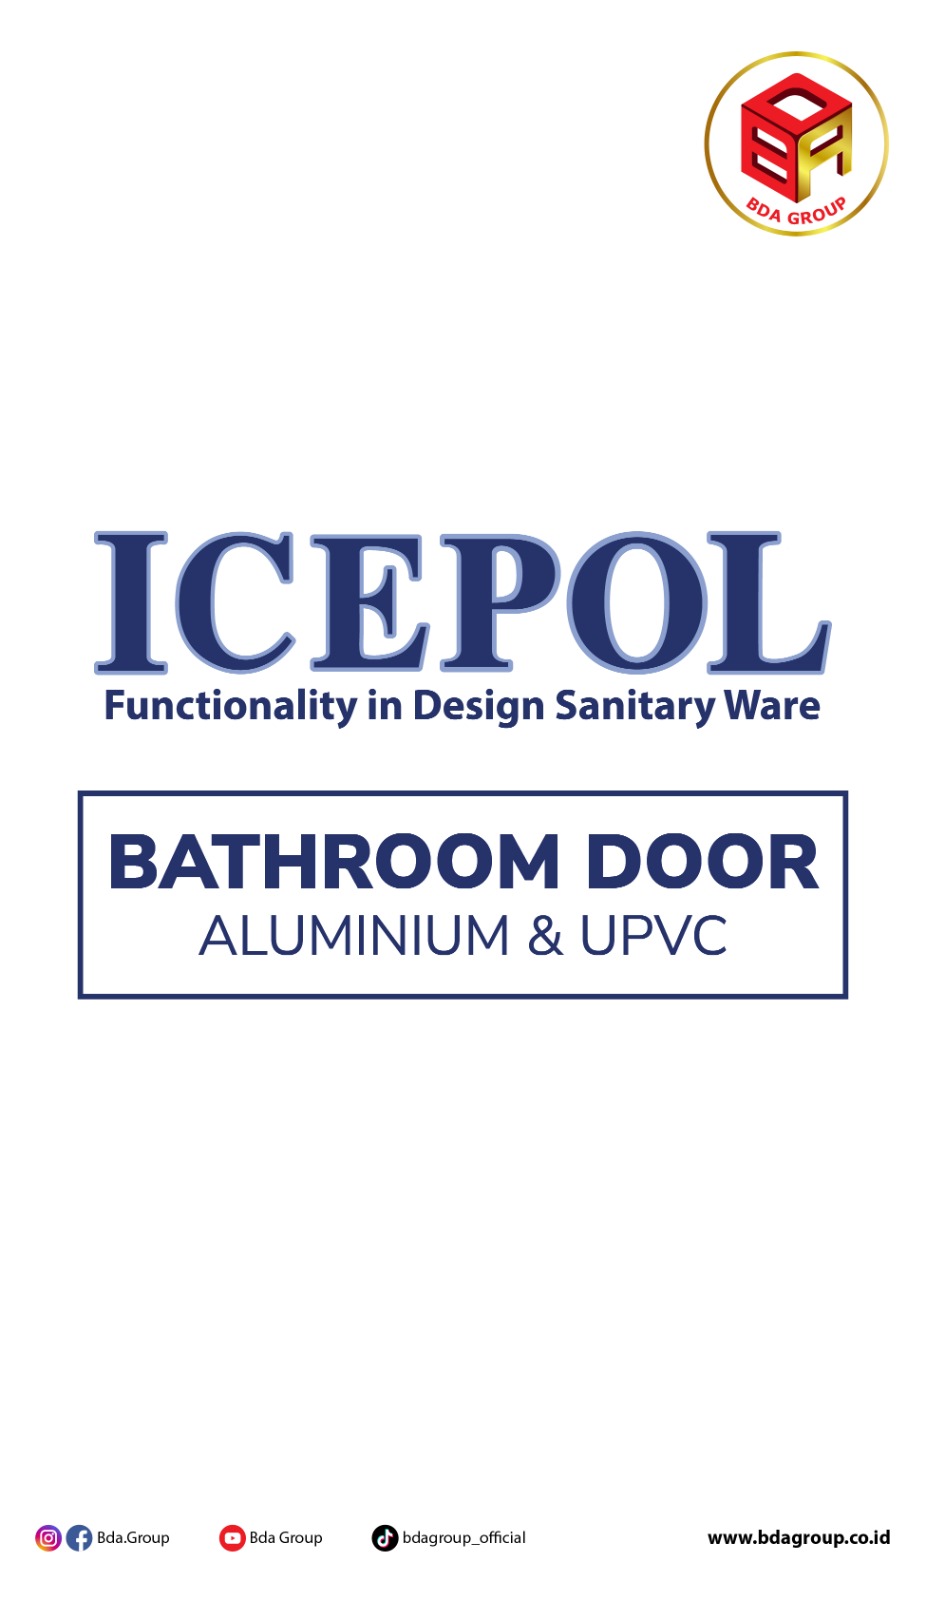 Icepol Bathroom Door